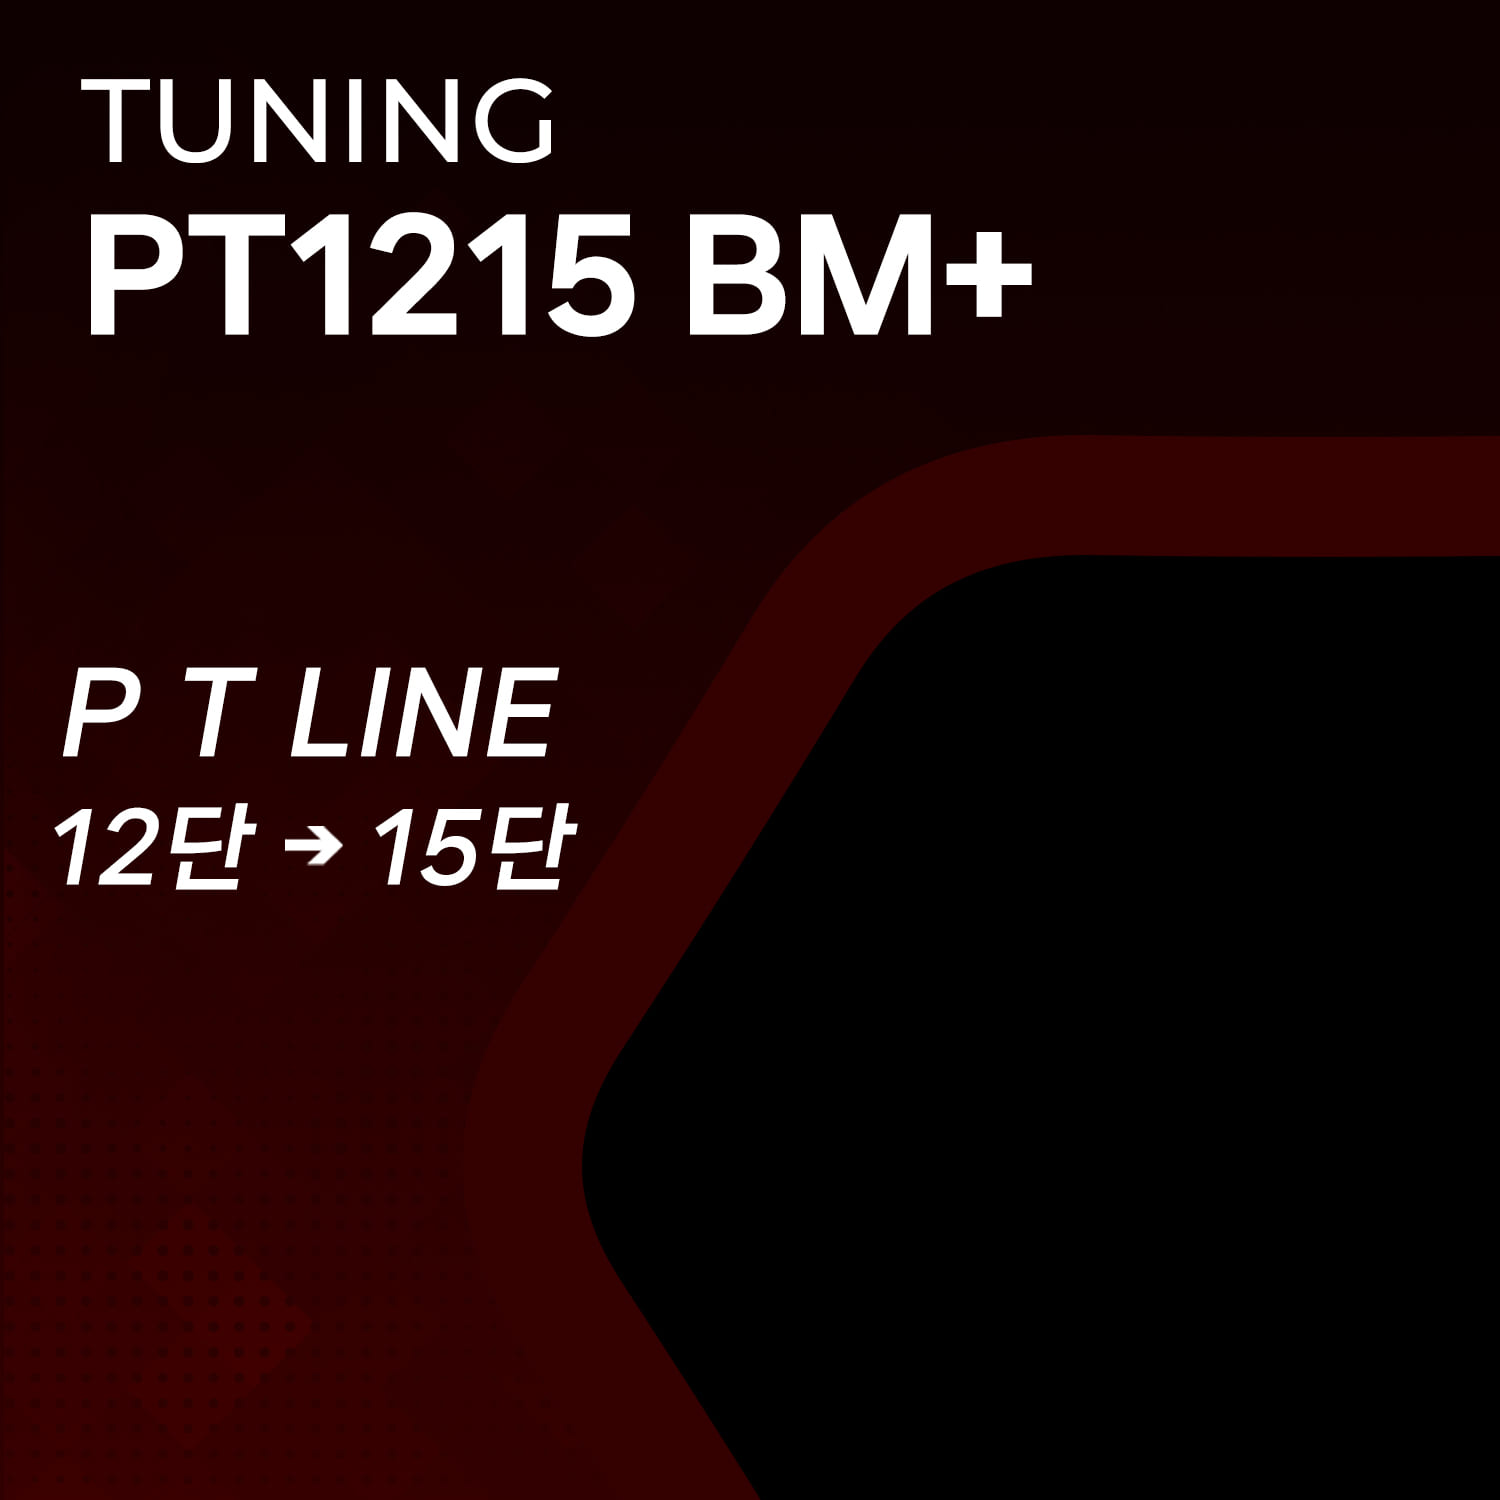 PT1215 BM+